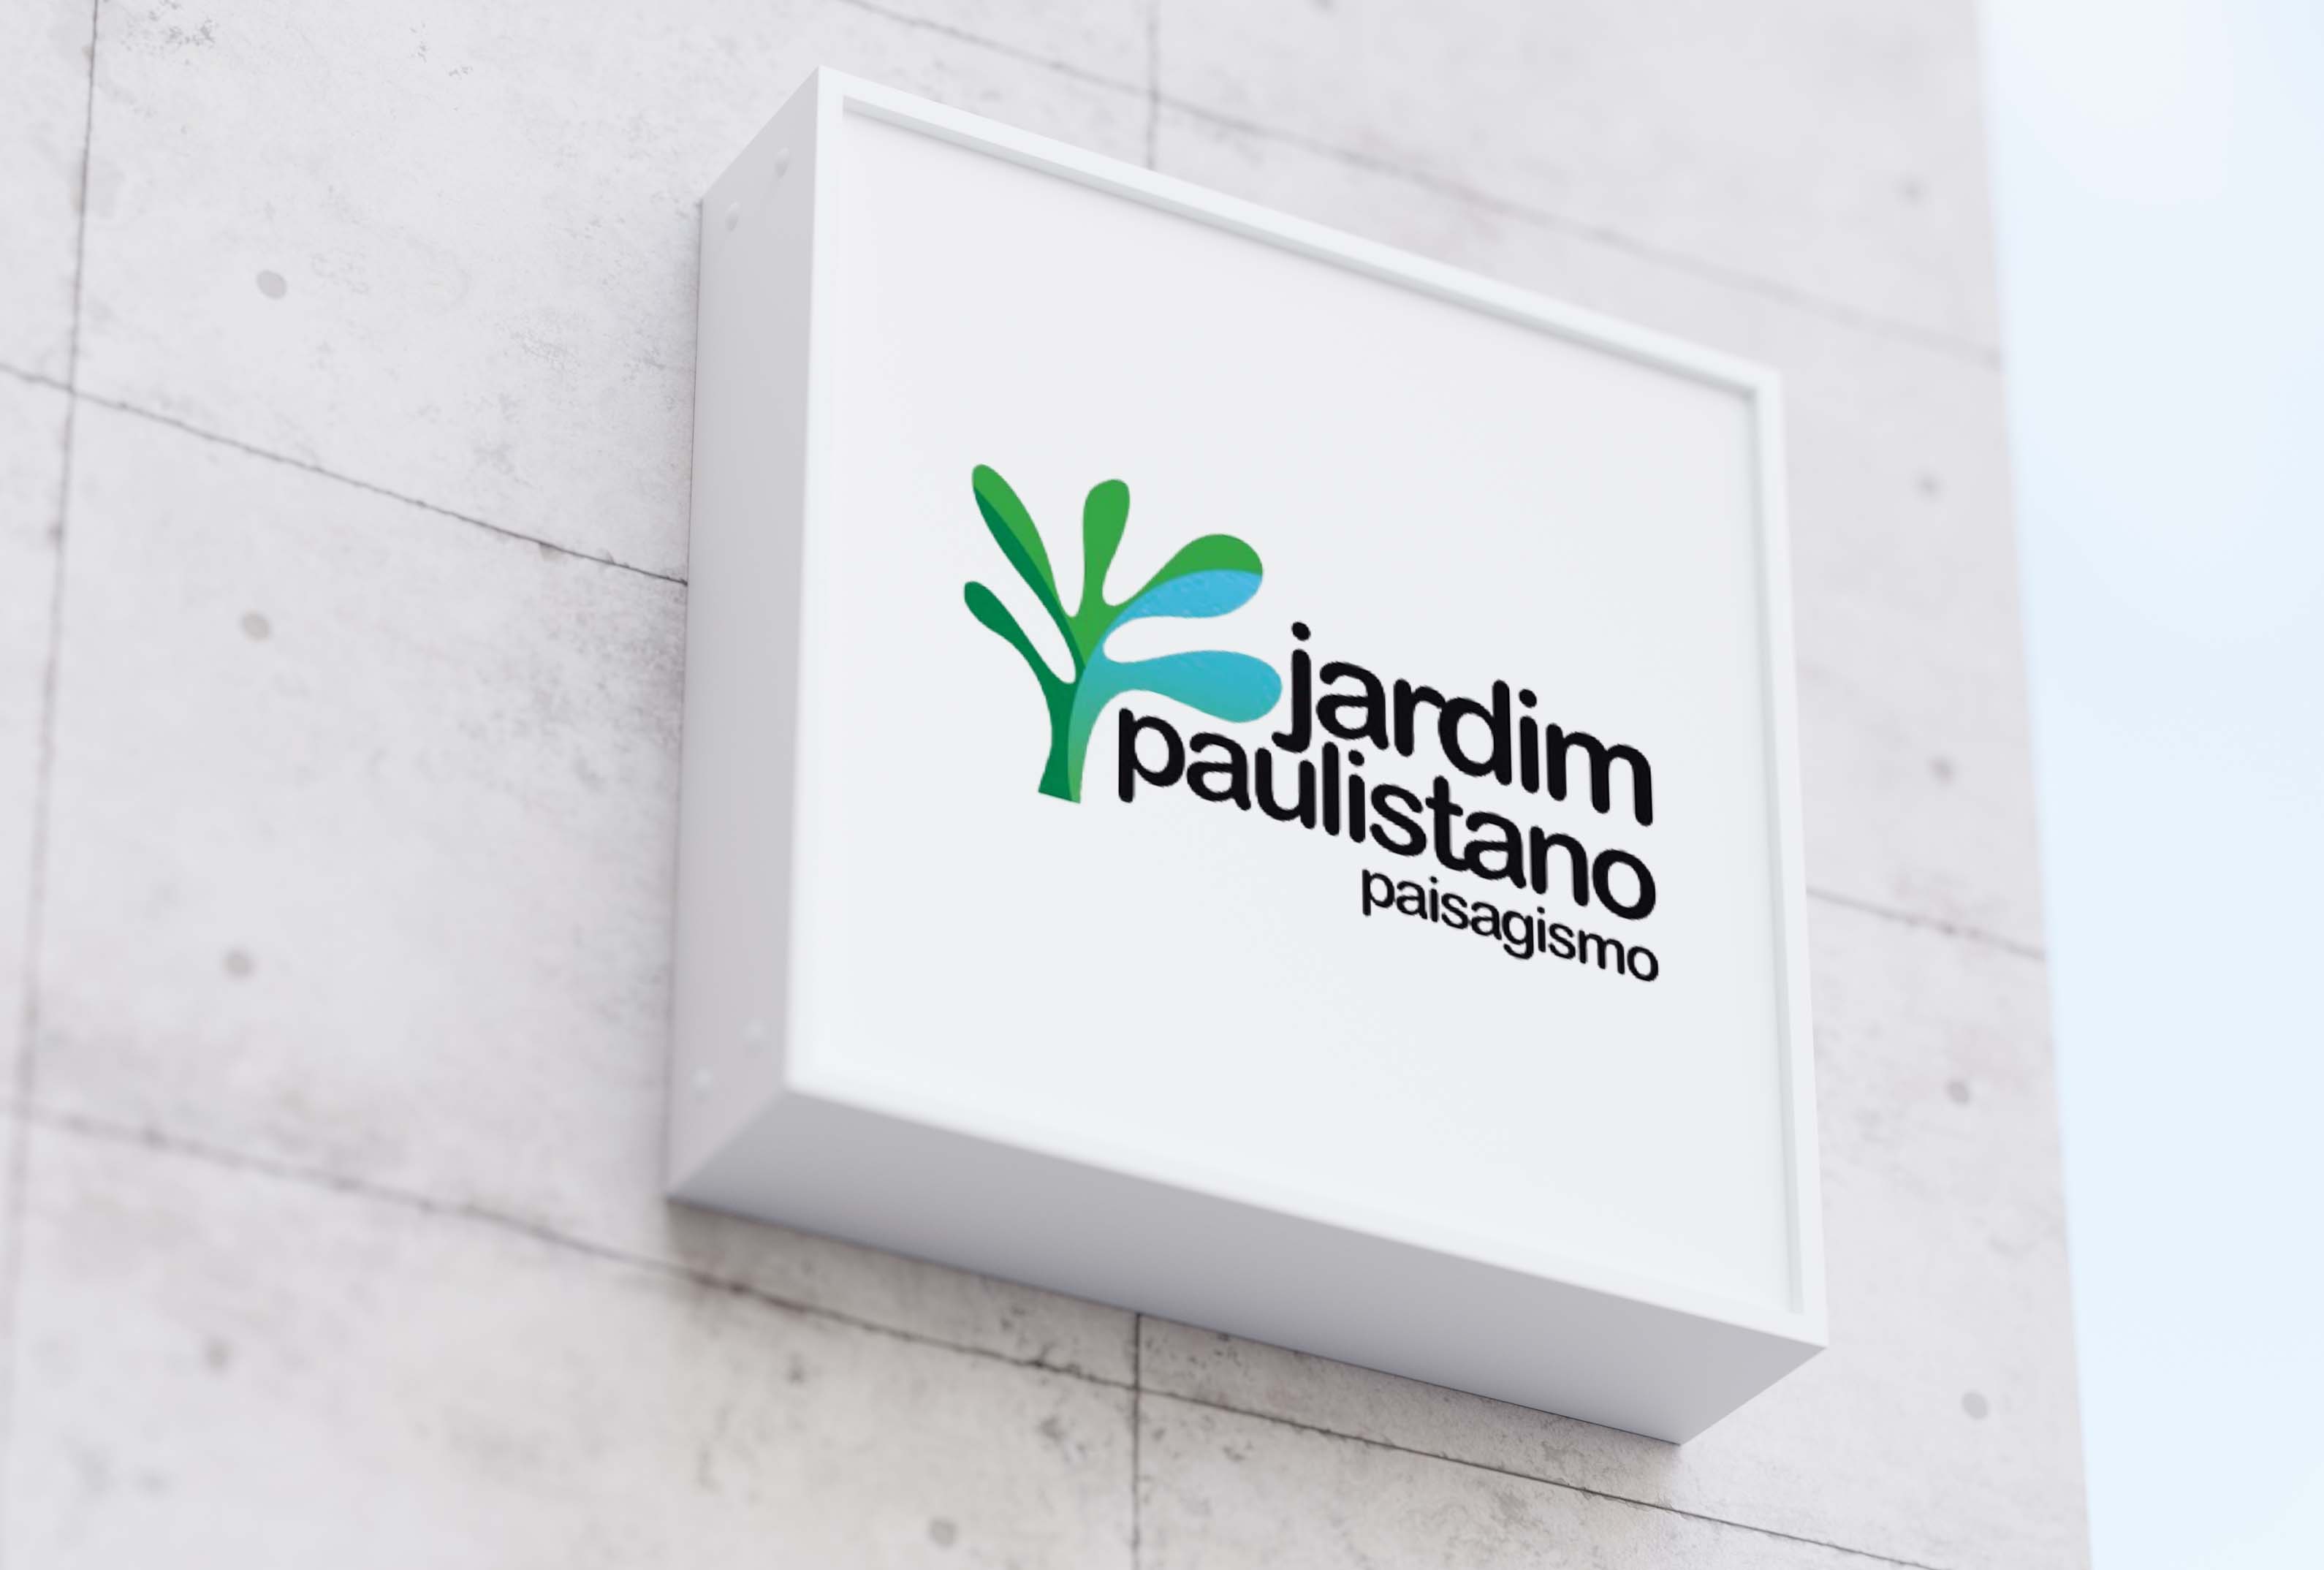 Jardim Paulistano Paisagismo